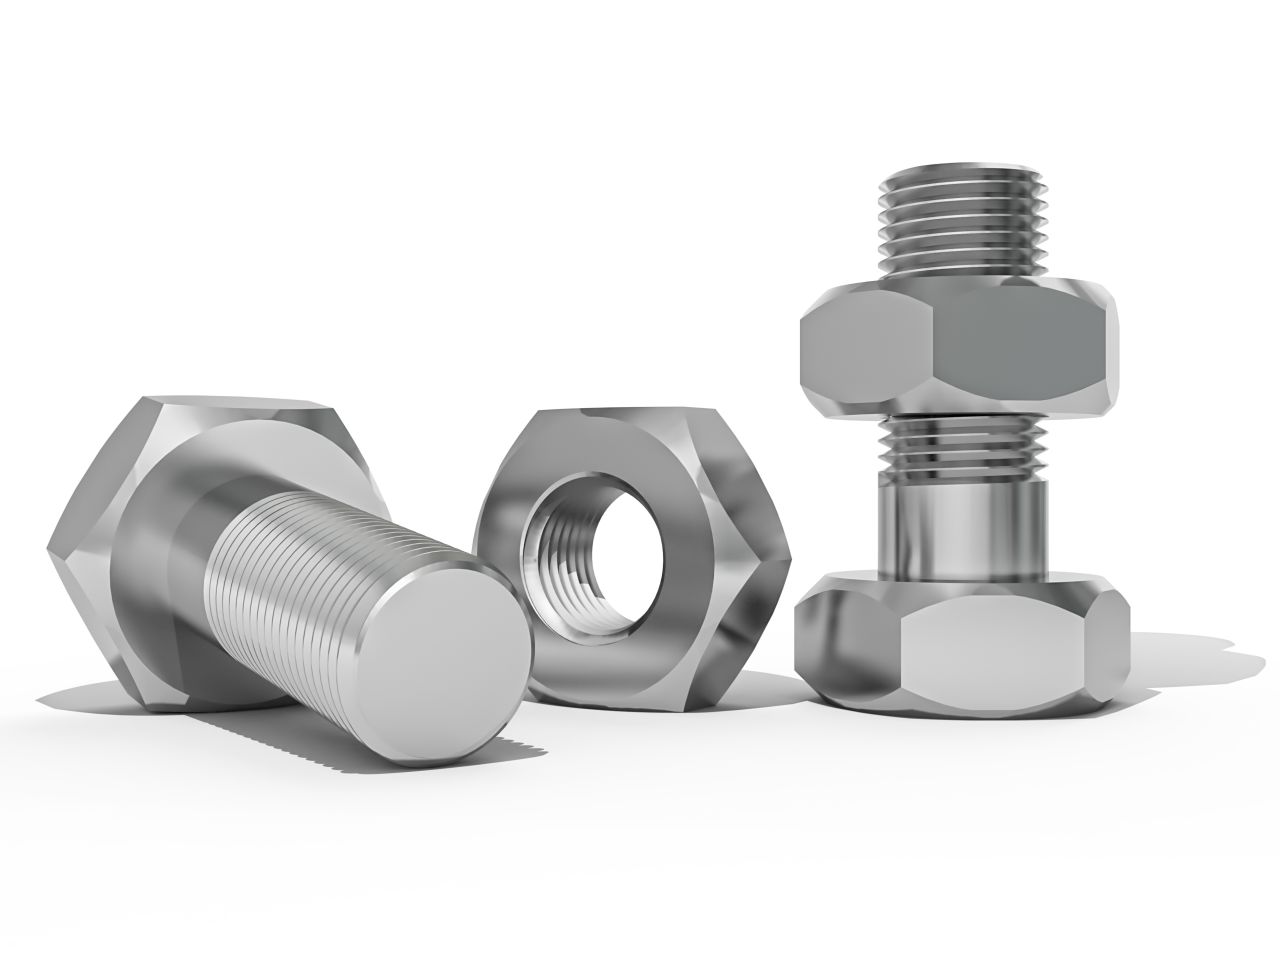 Jakie części służą do stabilnego montażu metalowych elementów?